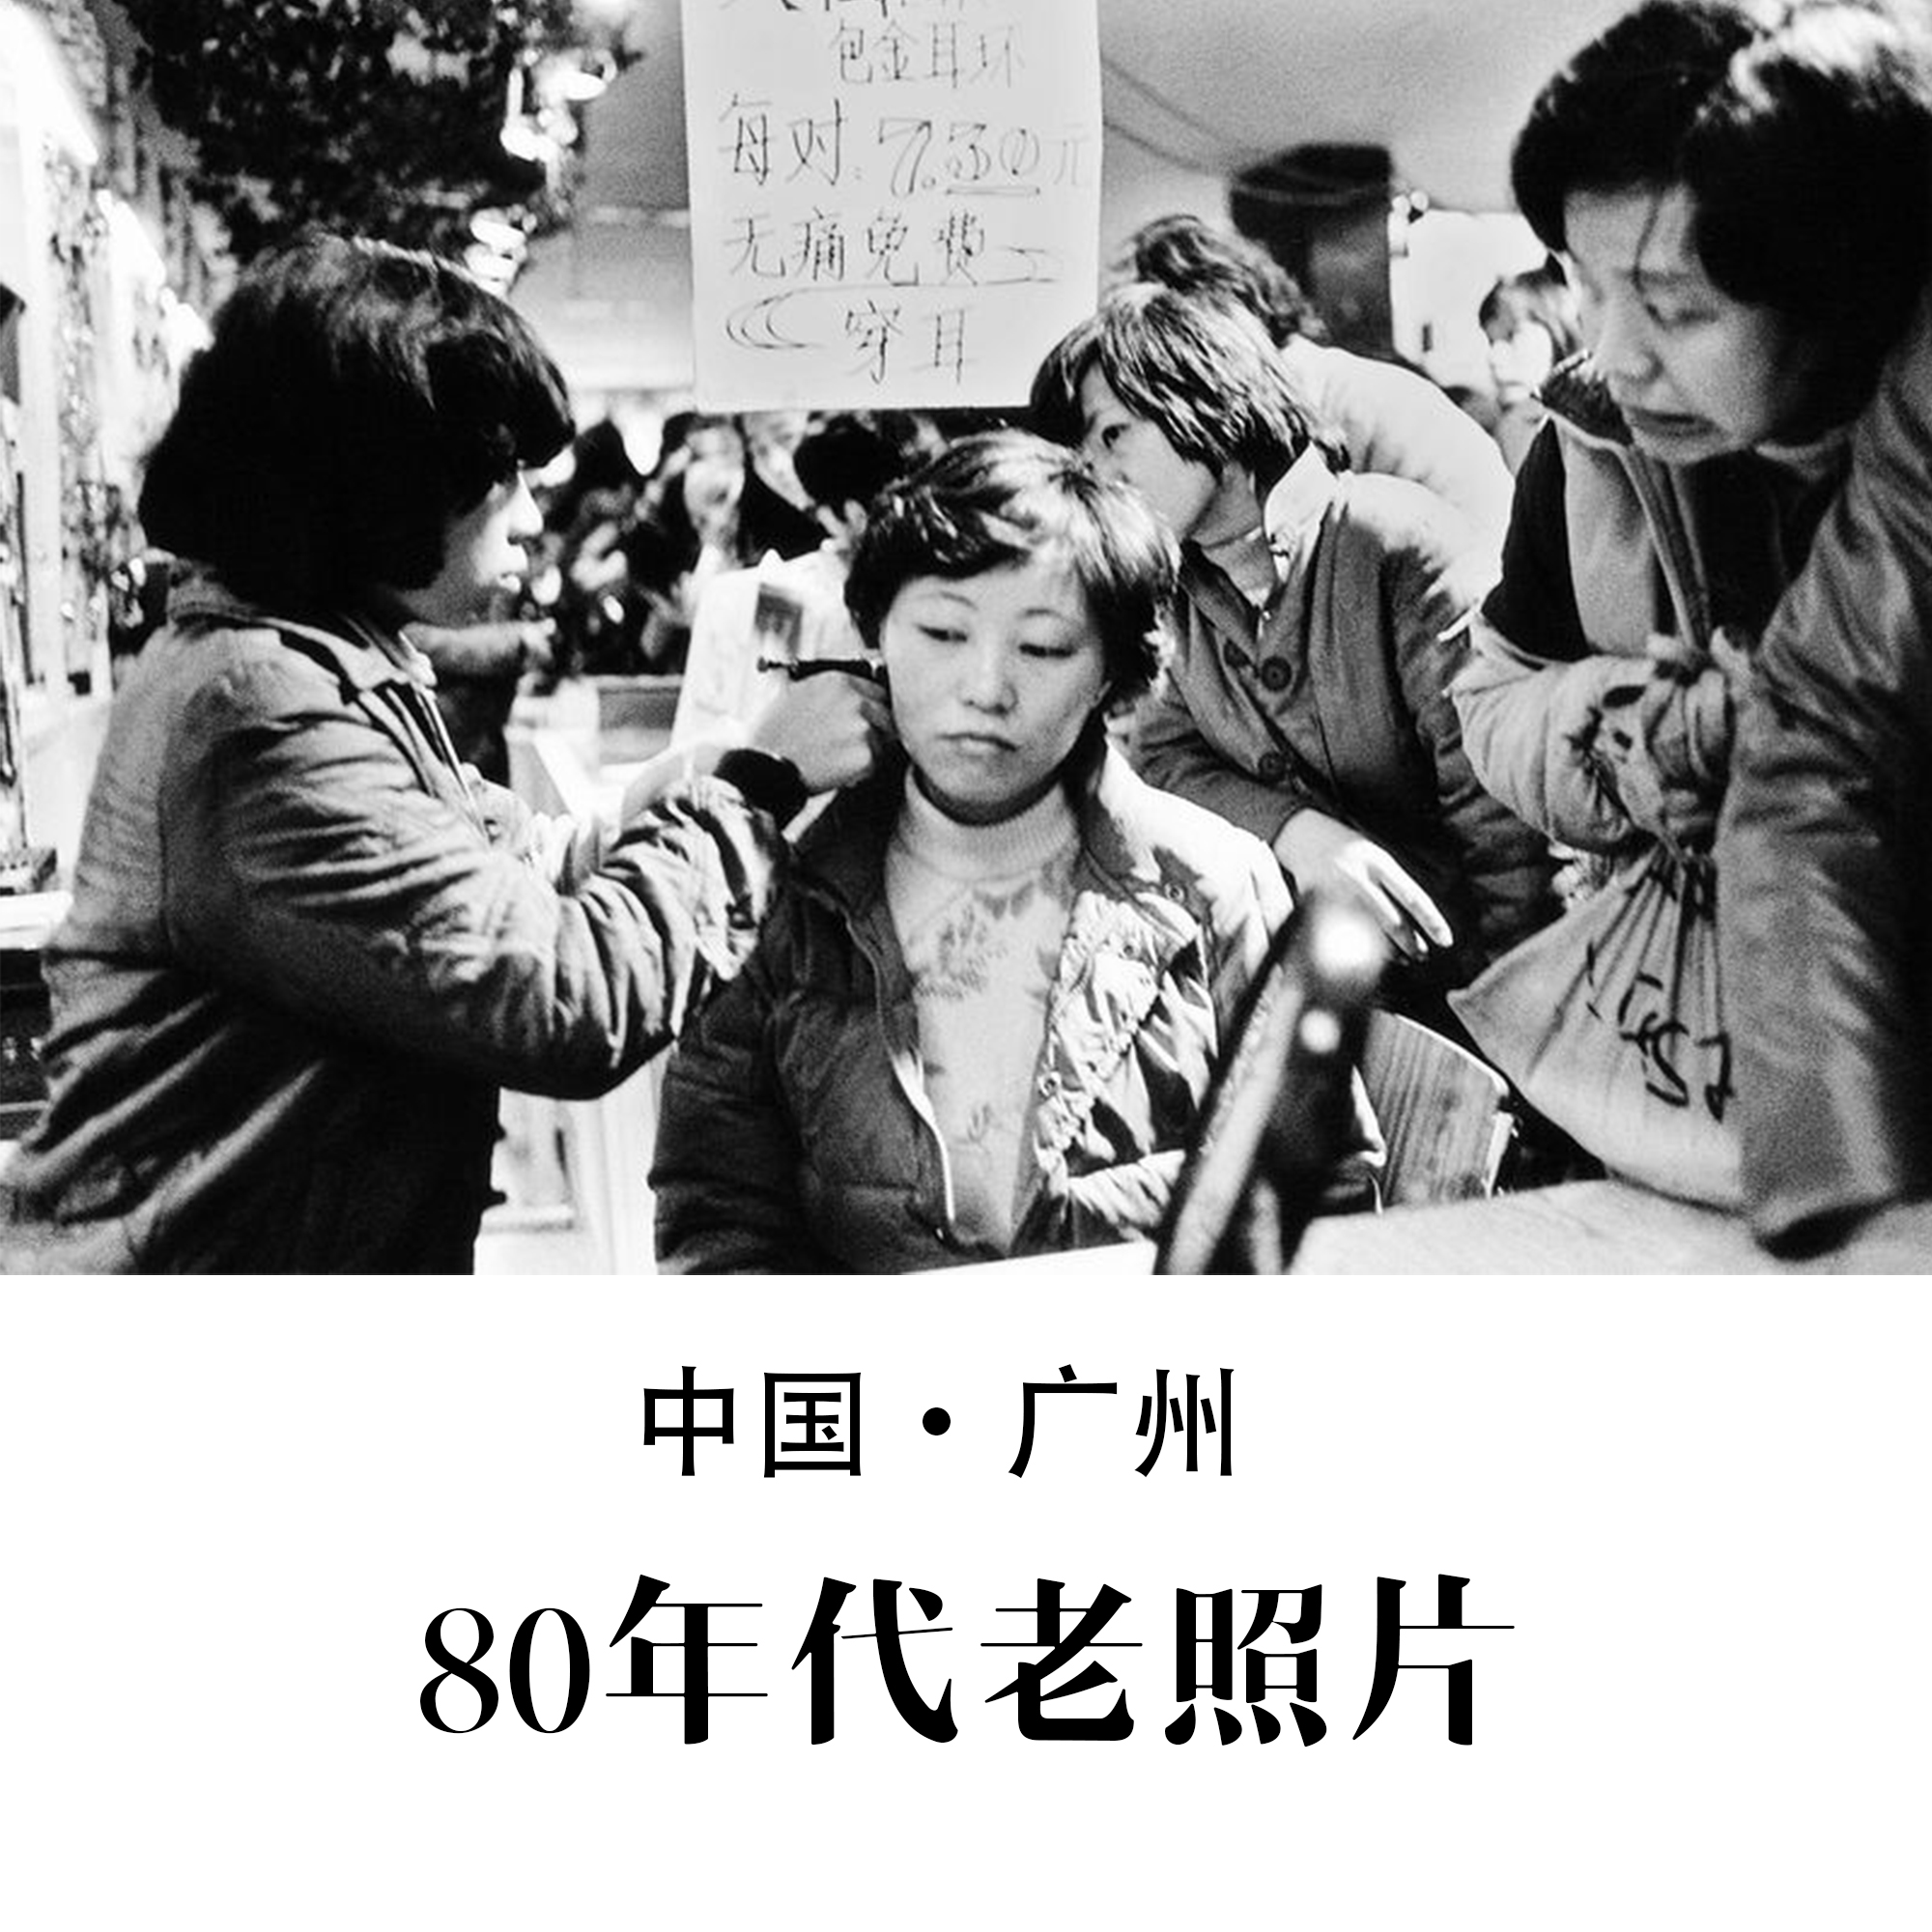 广州80年代老照片 怀旧影像 纪实摄影记录